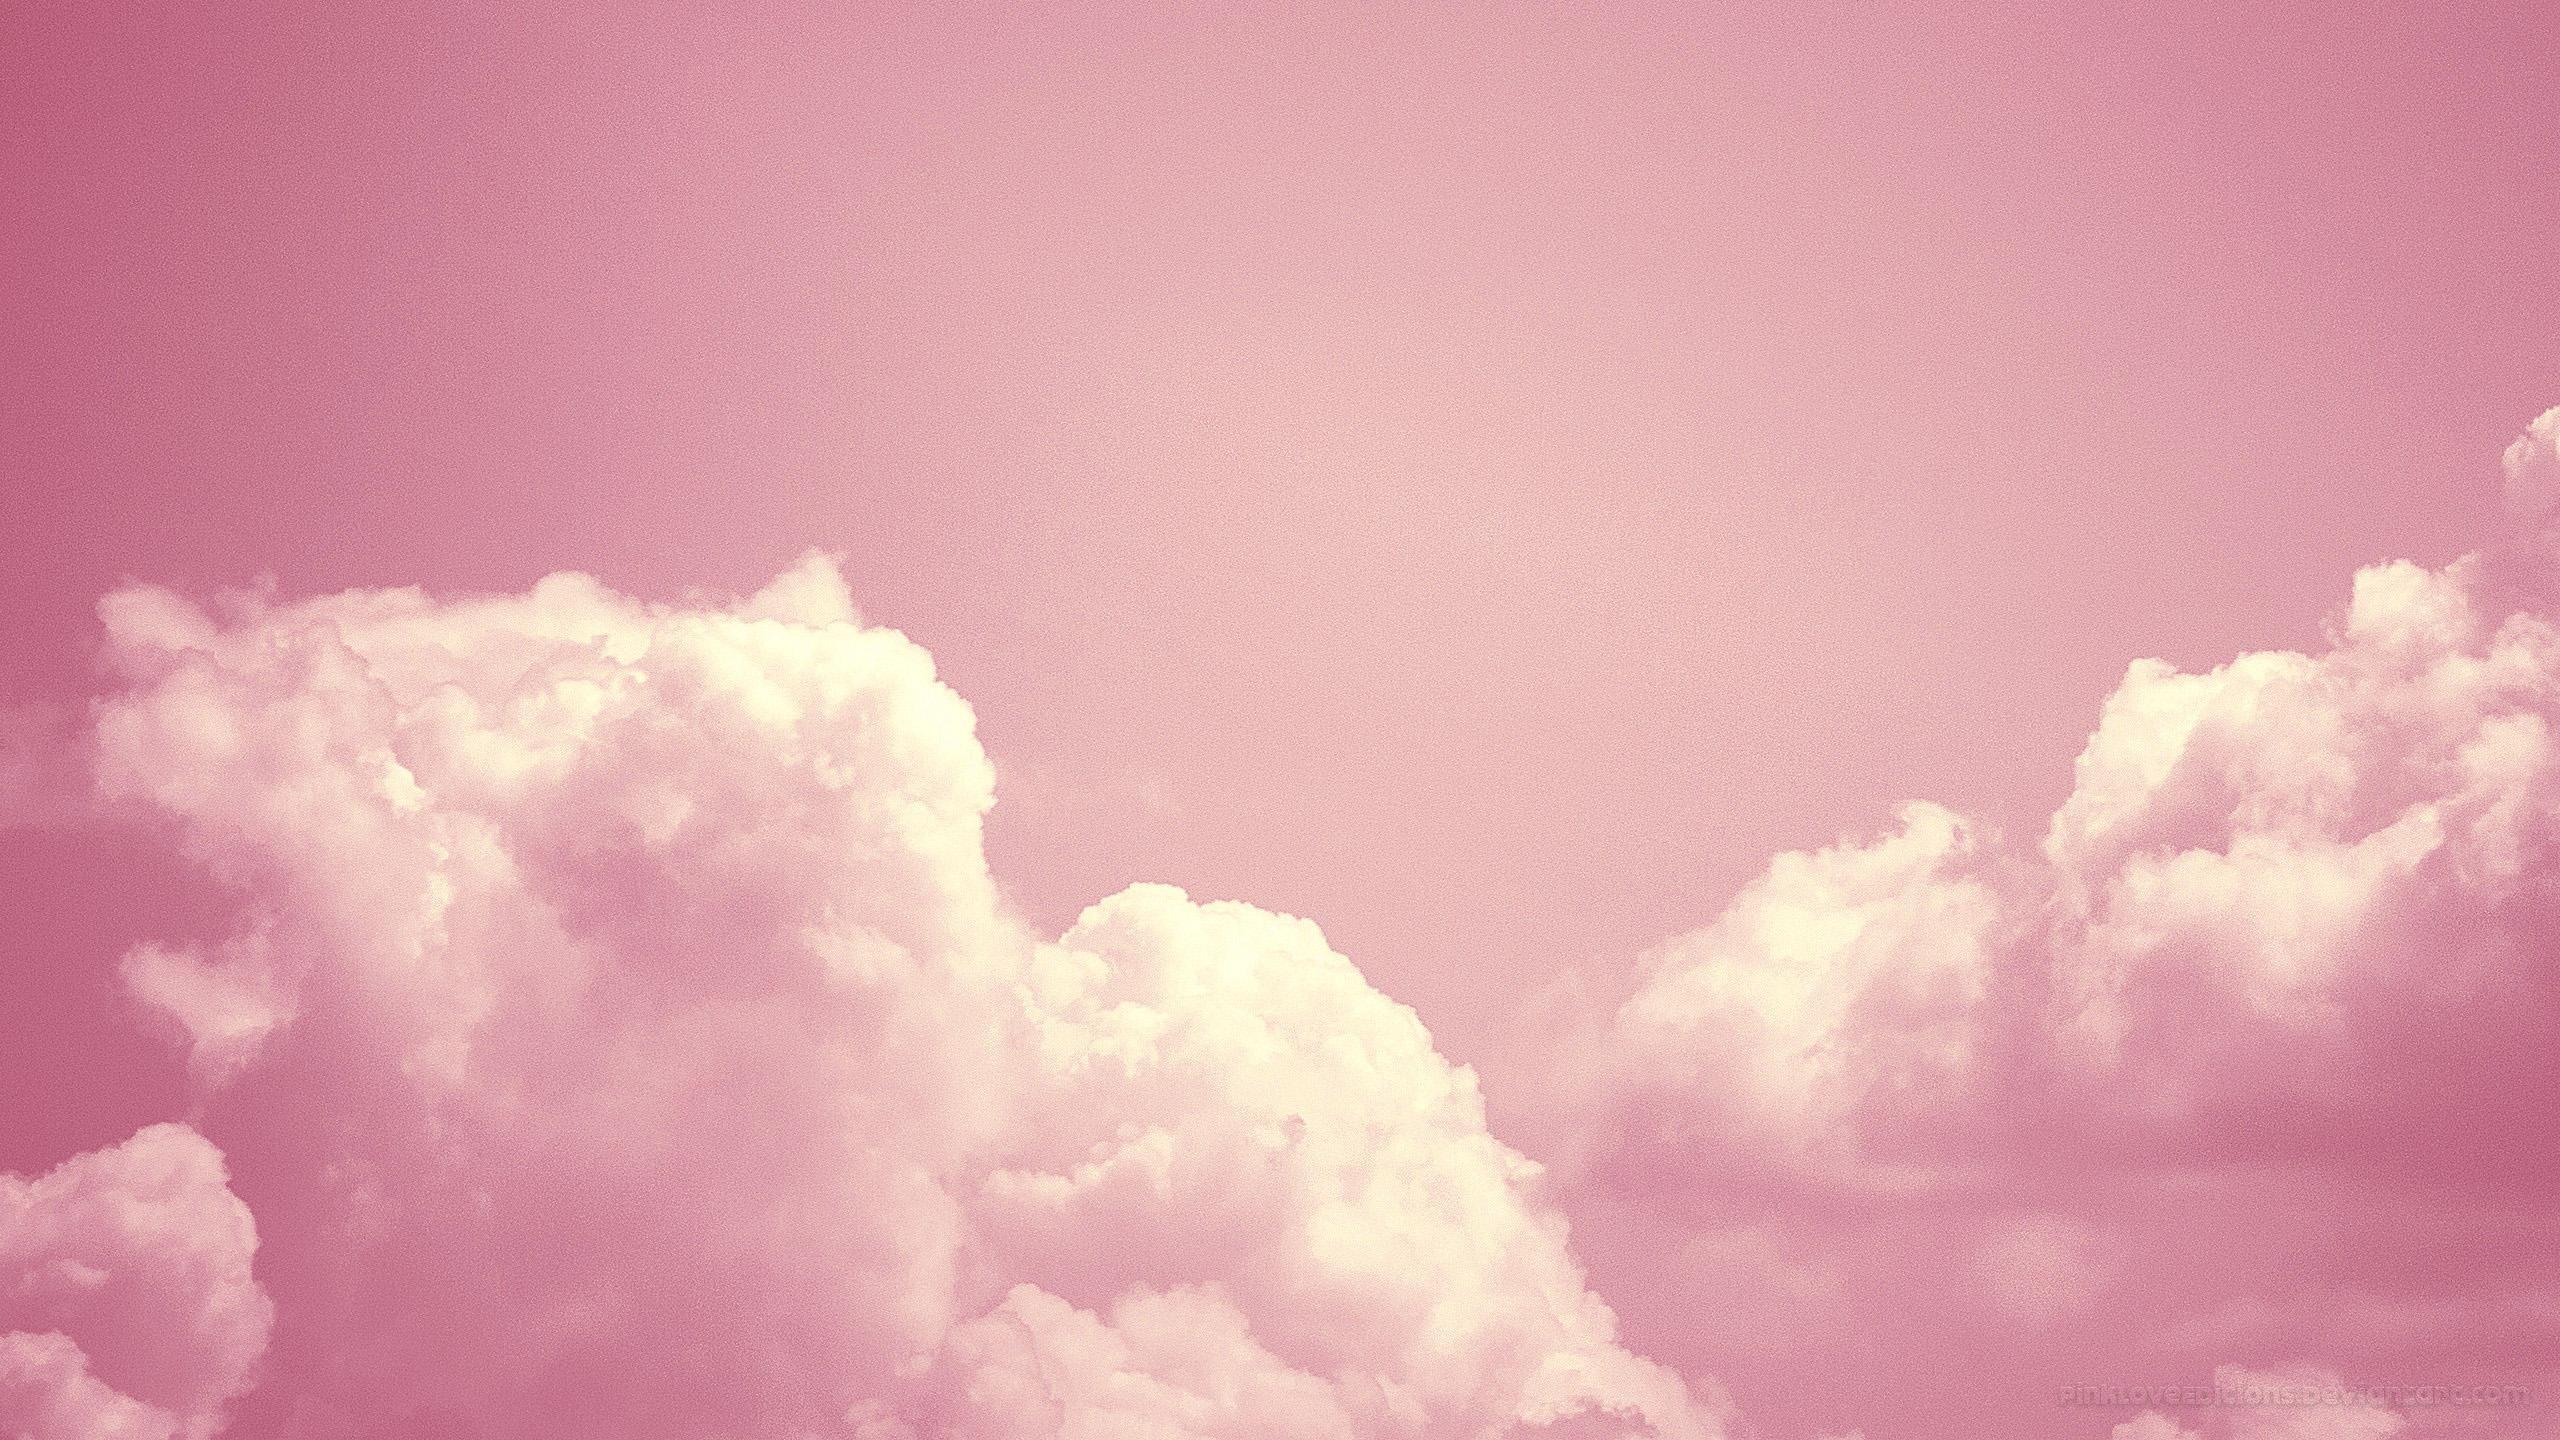 2560x1440 Clouds hình nền Tumblr